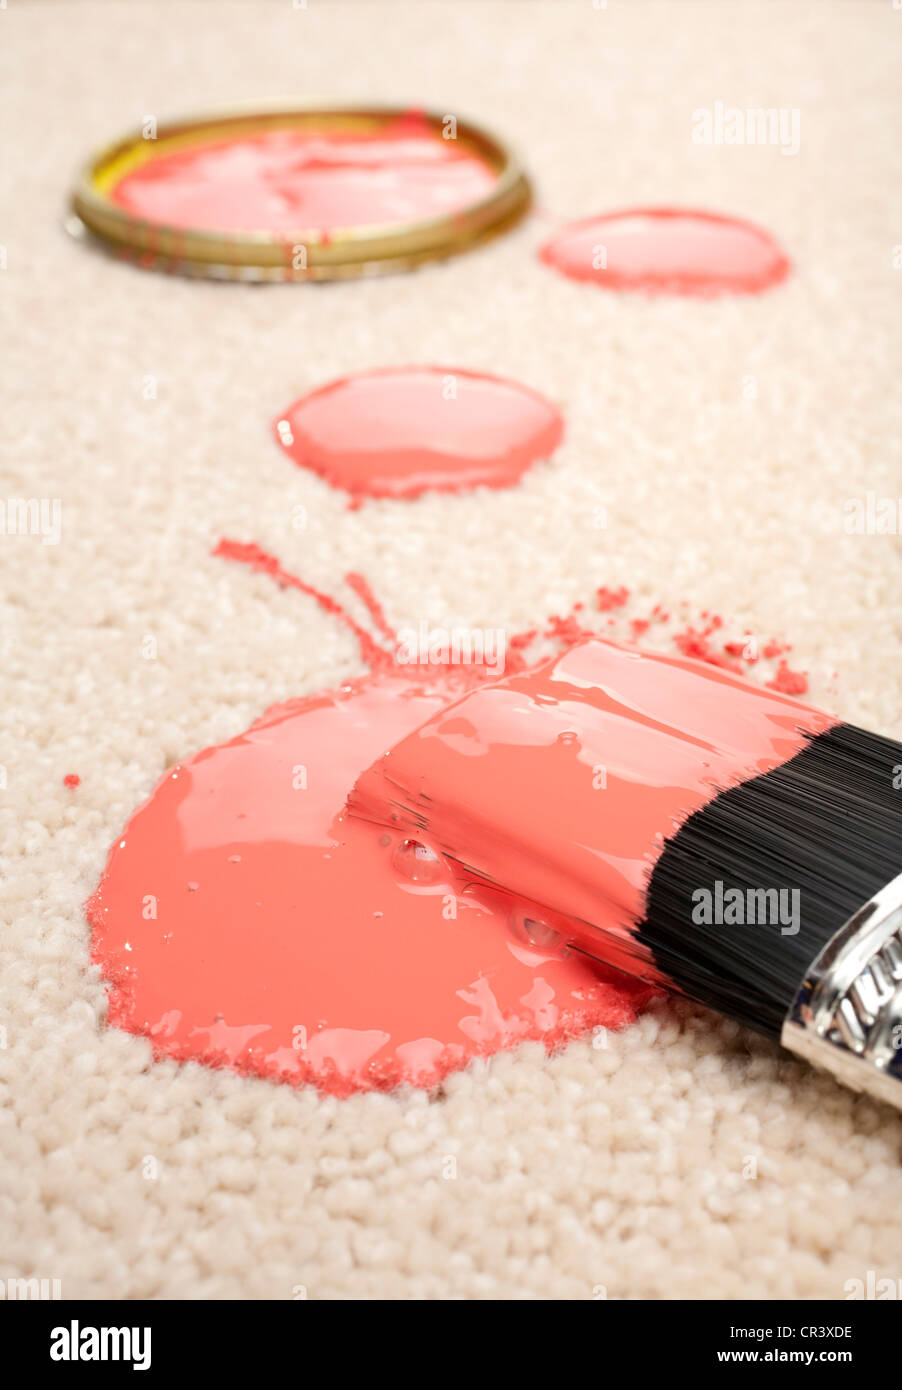 Pintura rosa derramado sobre la alfombra de color crema con un cepillo. Foto de stock